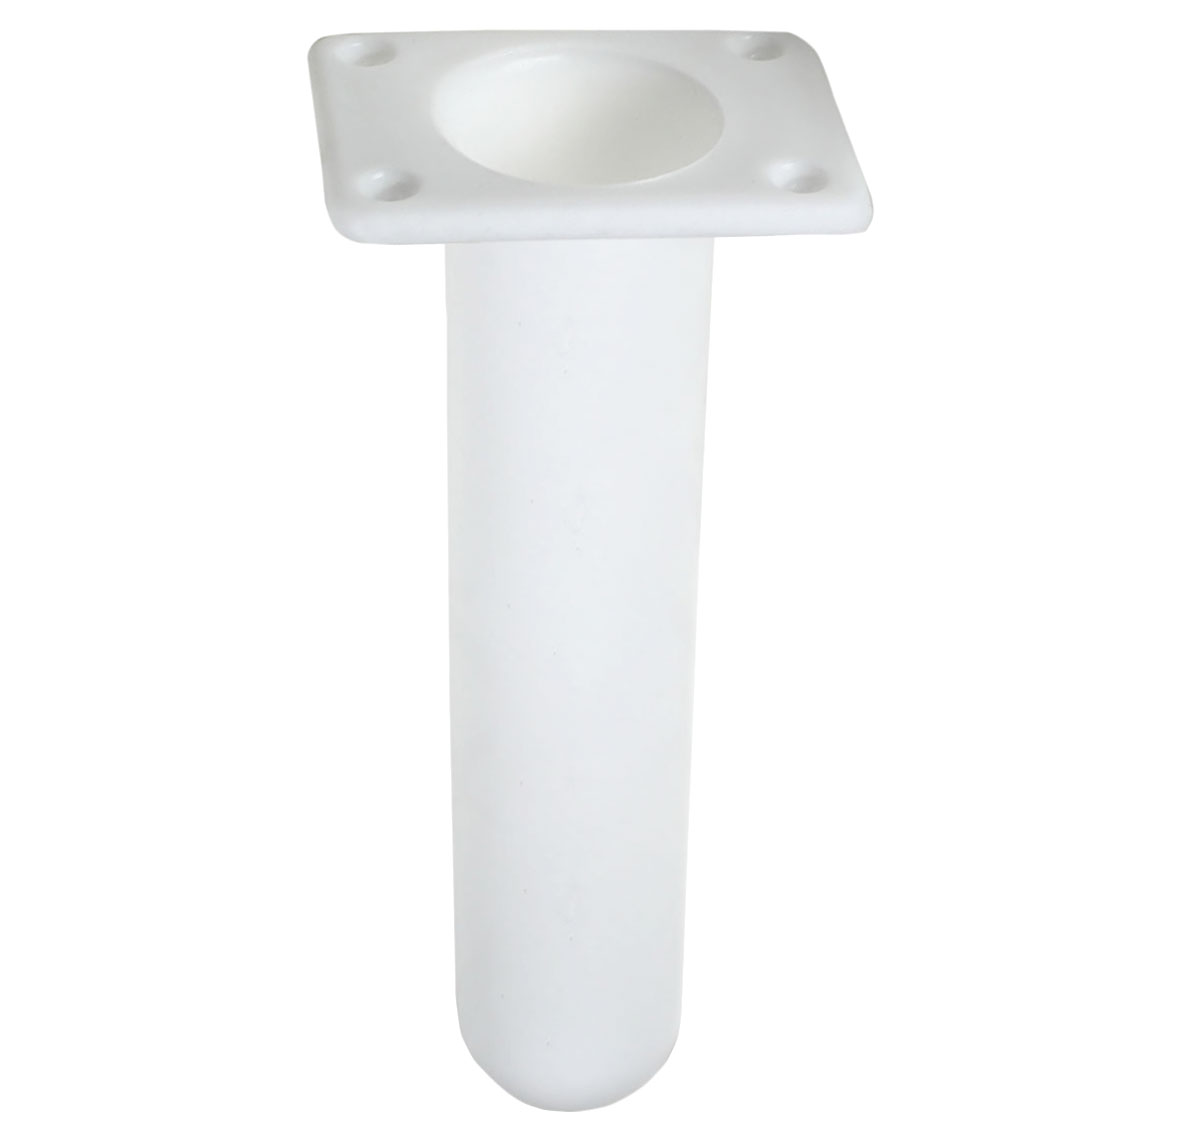 Plastic flush mount rod holder used also for rod rest H.230mm Internal  Diameter 40mm